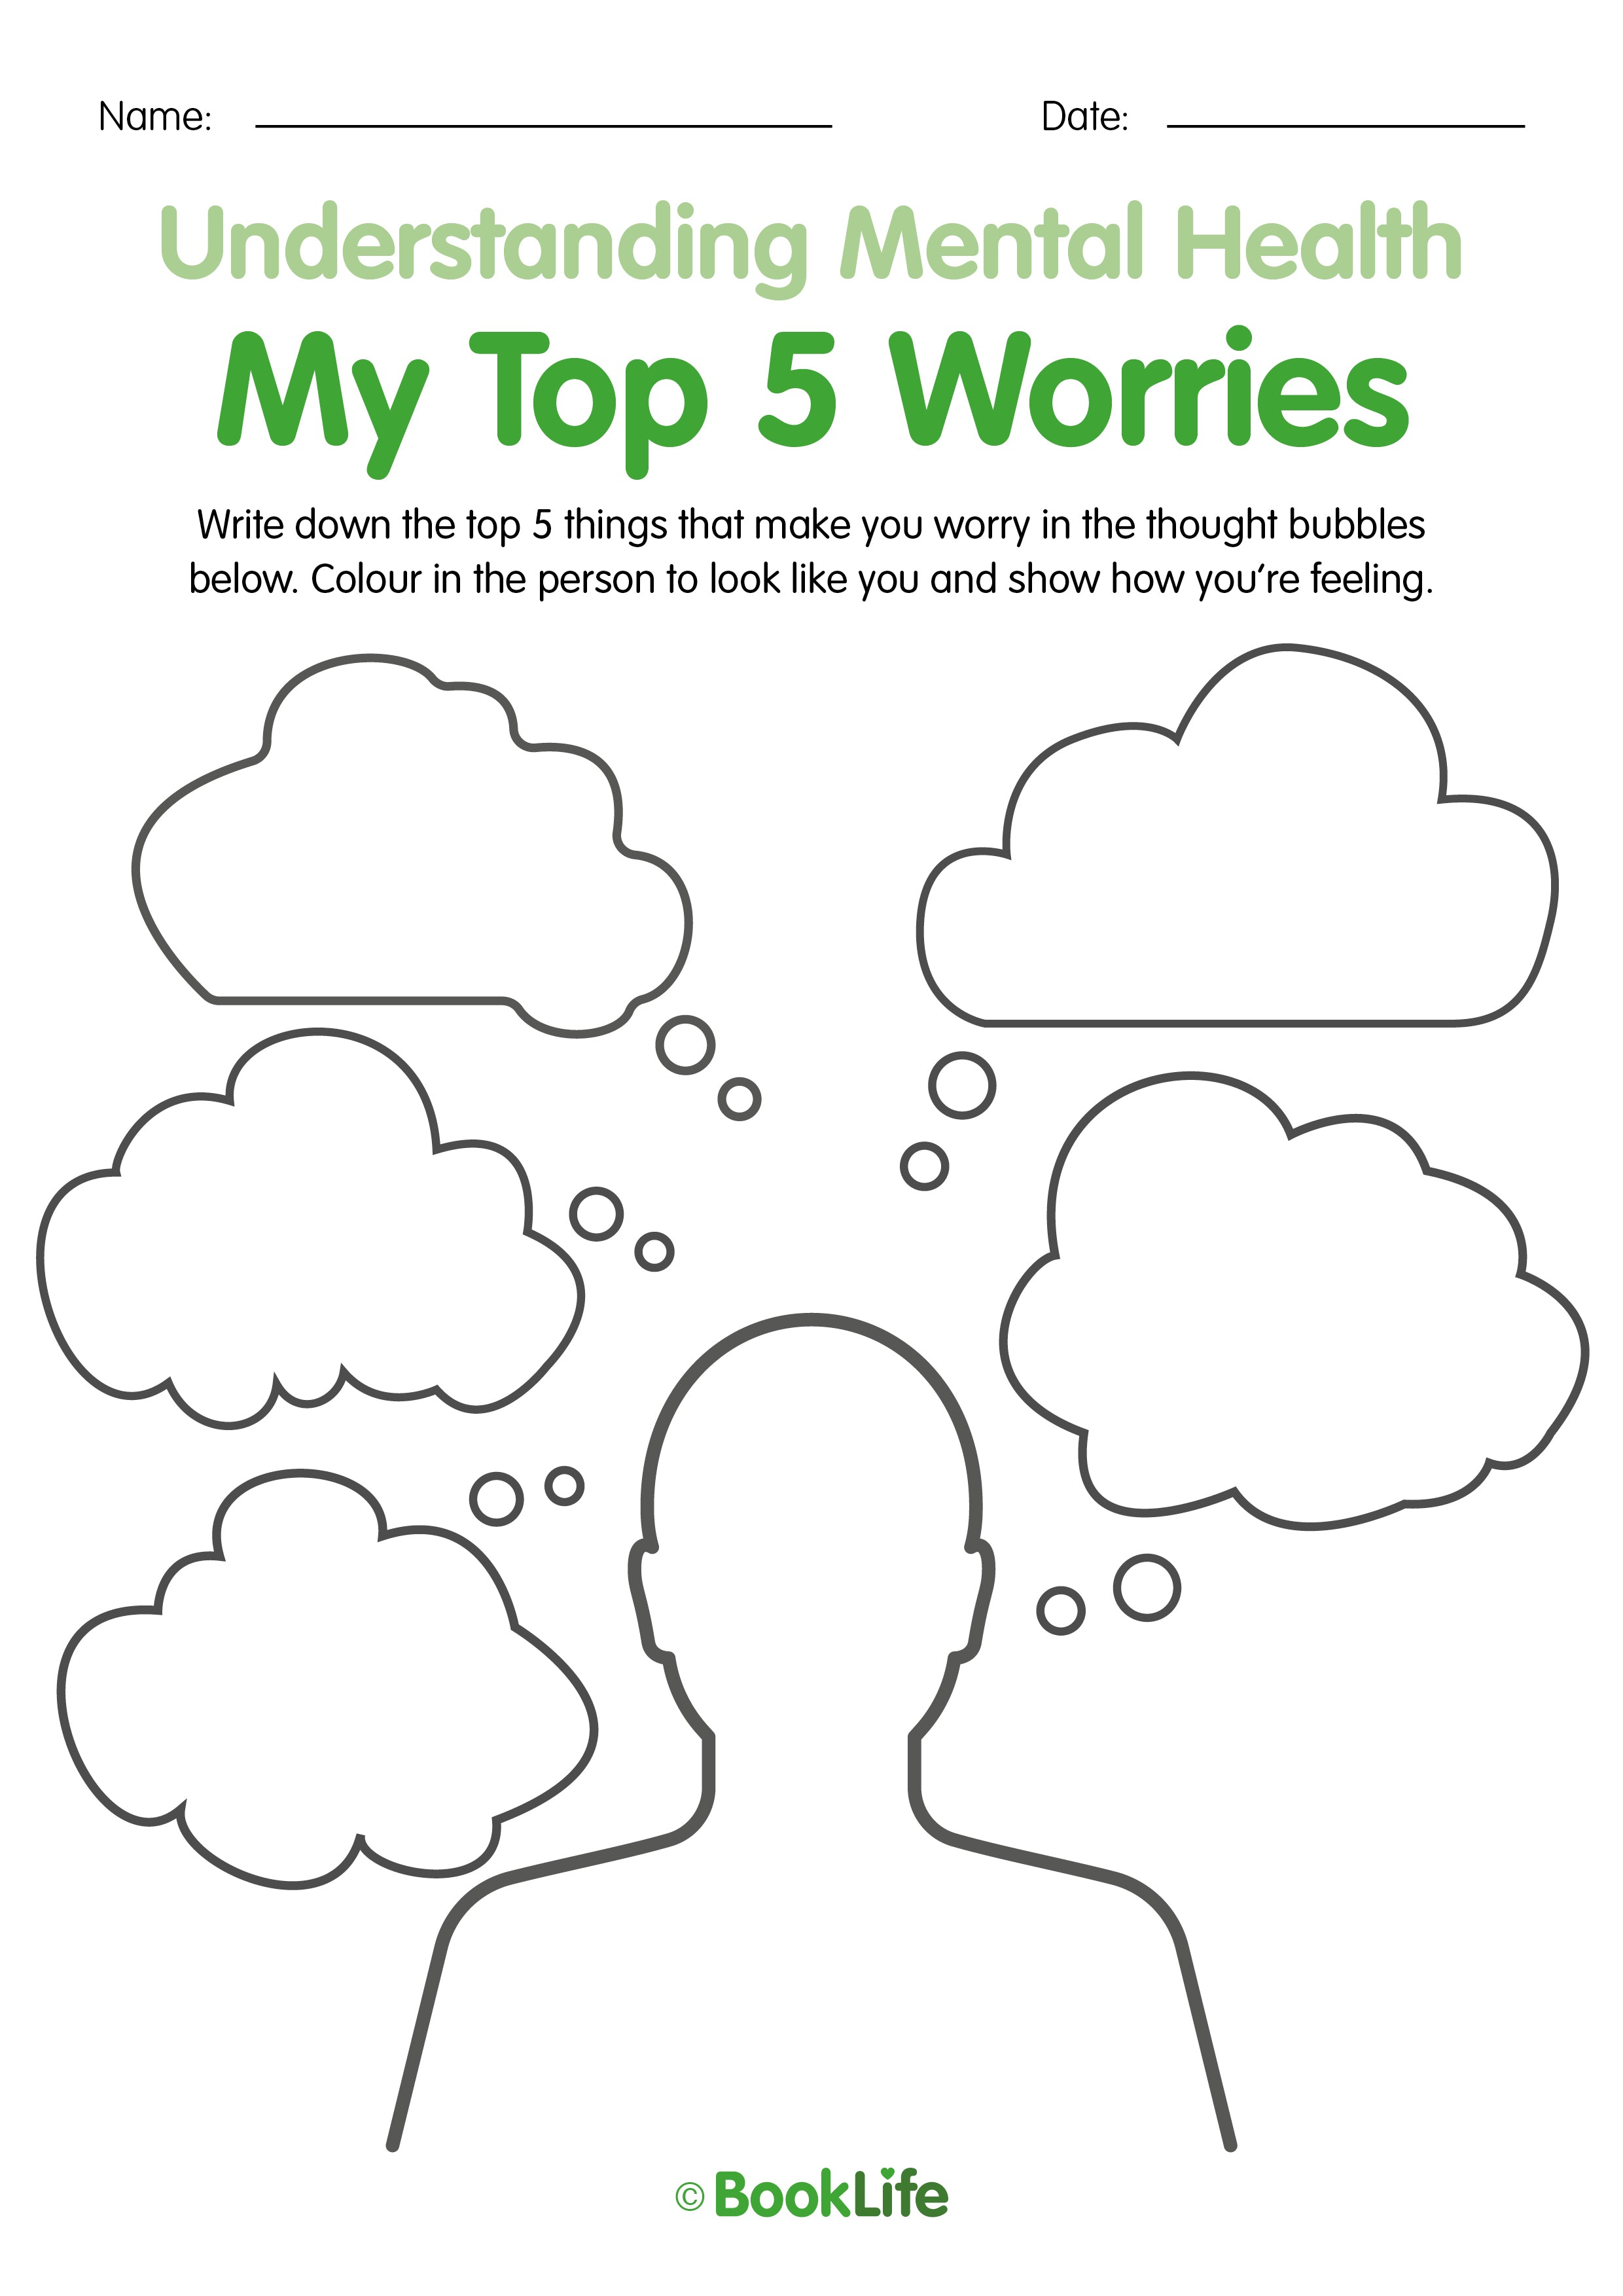 My Top 5 Worries Activity Sheet